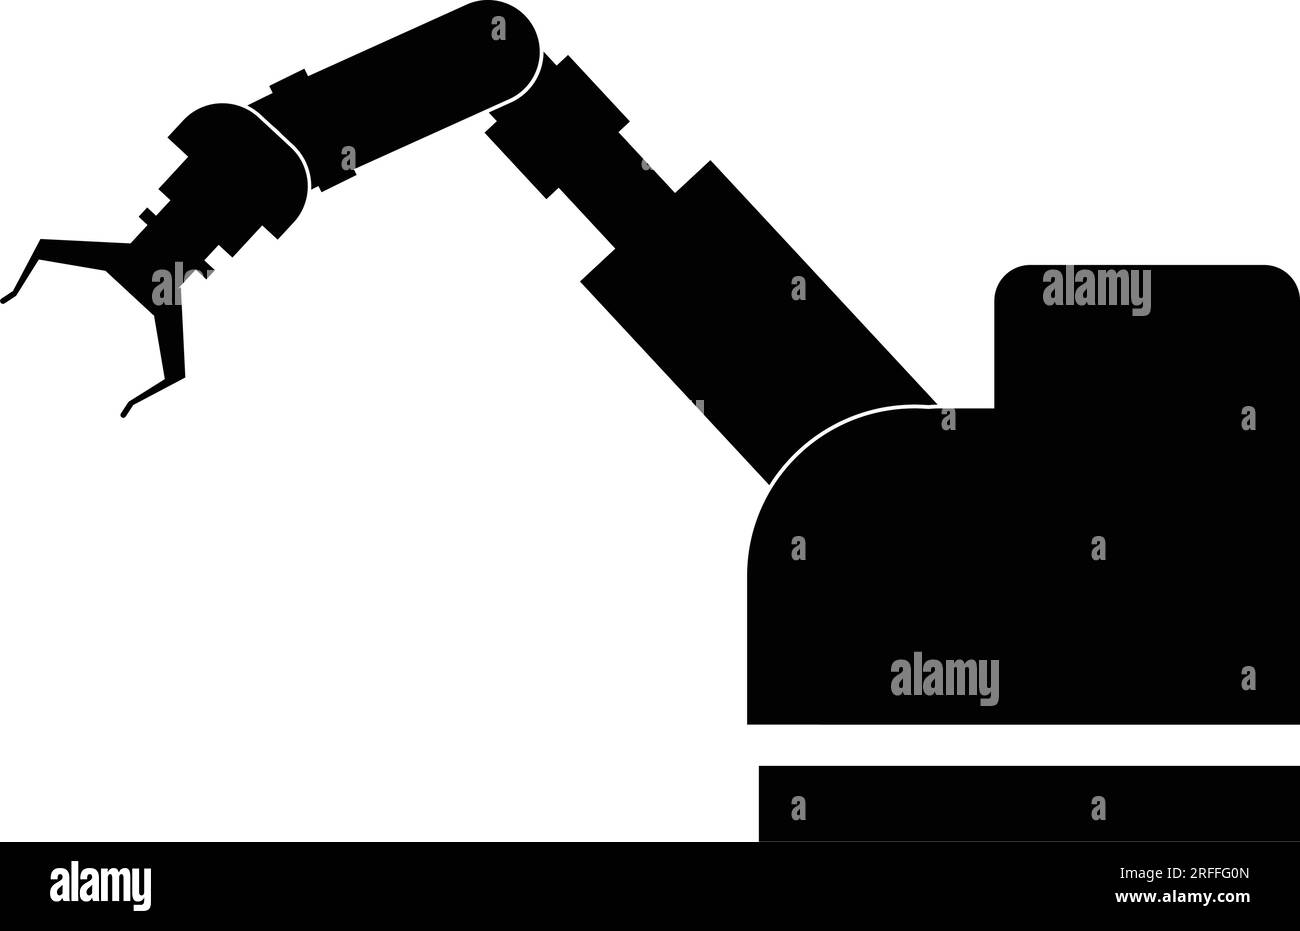 Industrial robot icon vector design,mechanical robot arm icon. Stock Vector